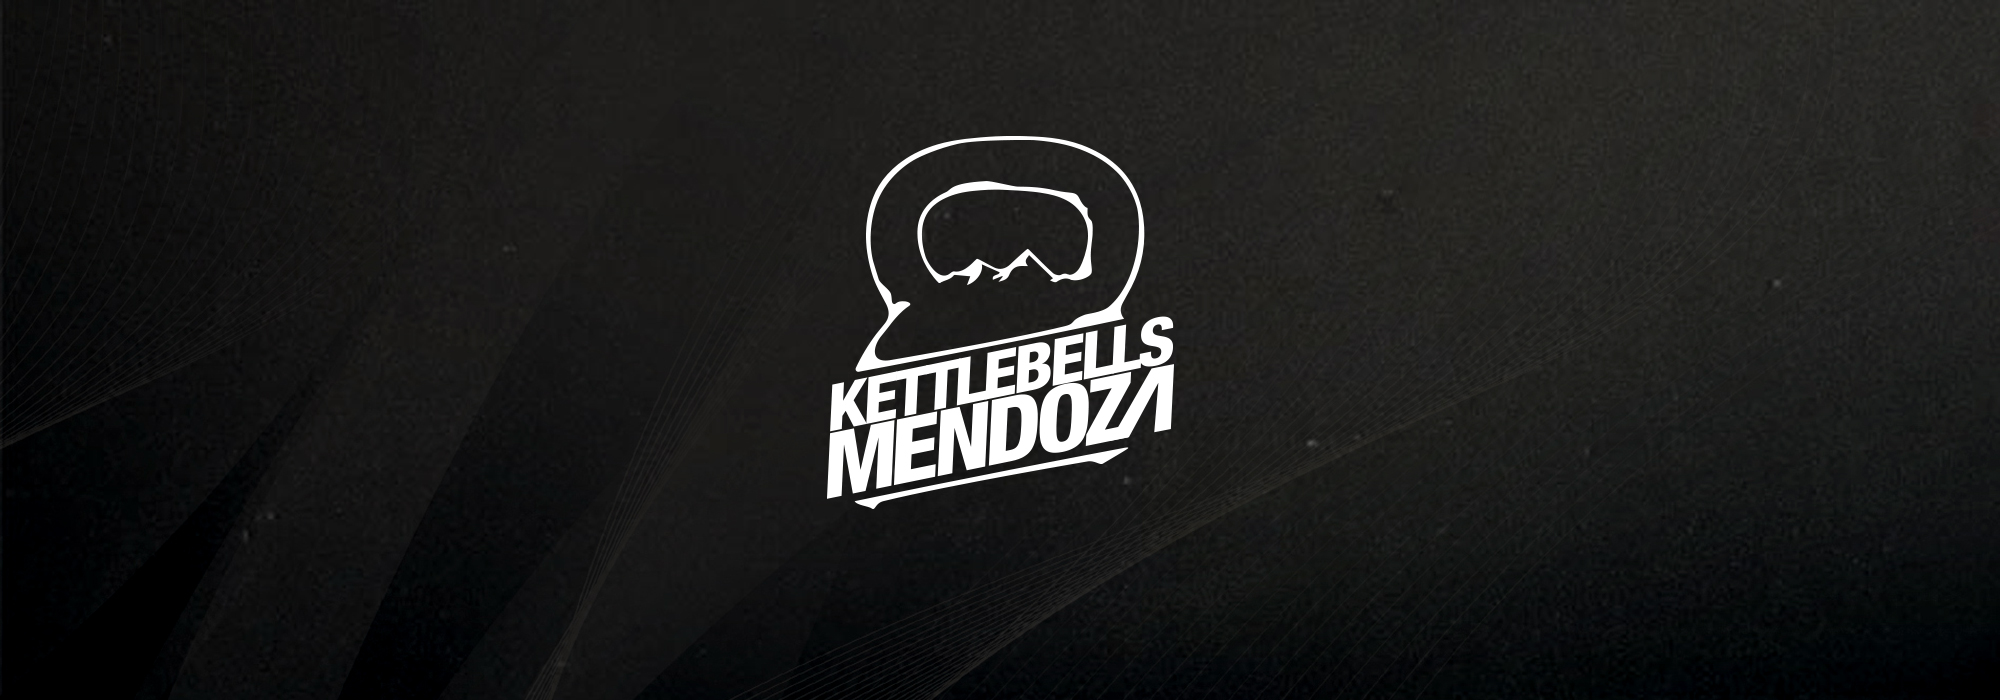 Emiliano_Romero_Design_Branding_KettlebellsMendoza_featured